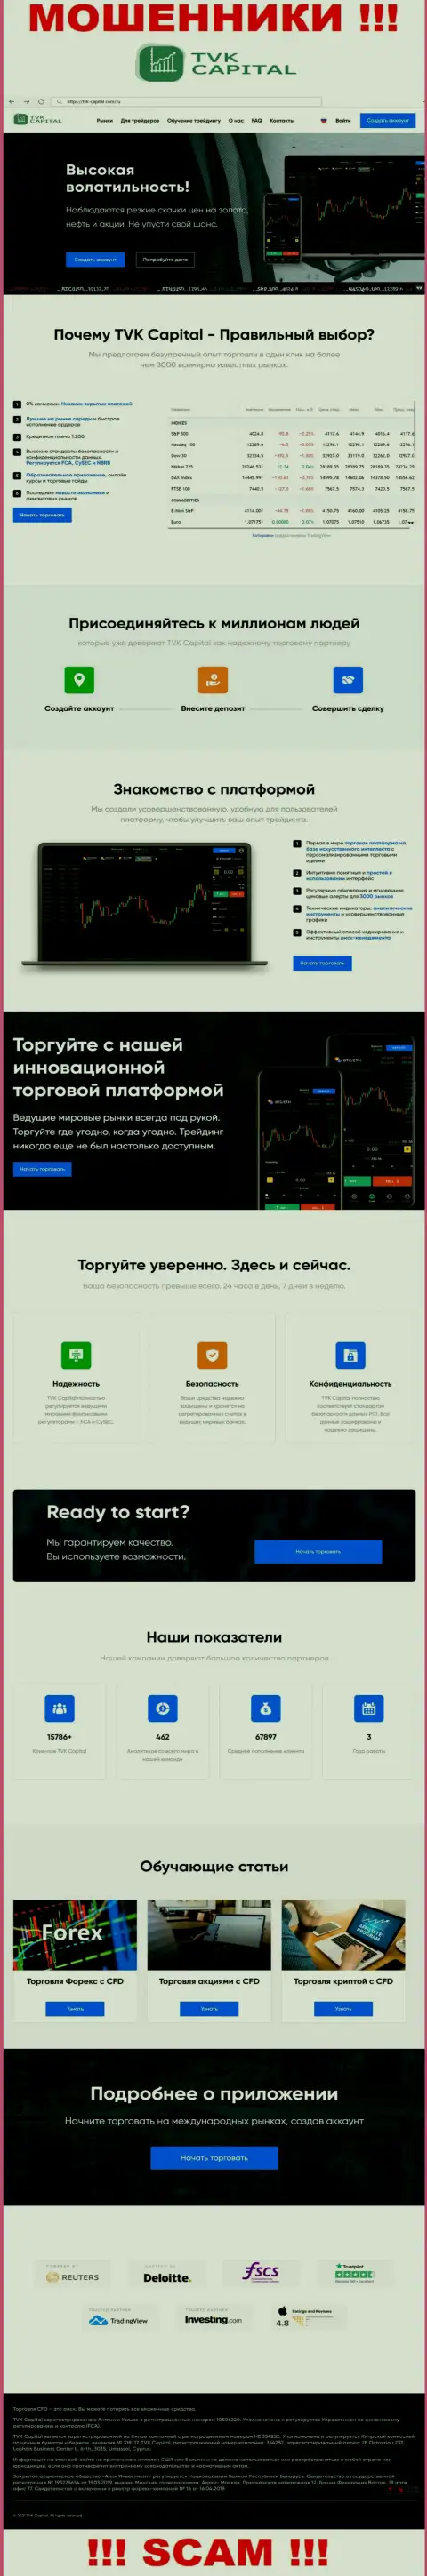 TVKCapital Com - это web-портал организации TVK Capital, типичная страница кидал